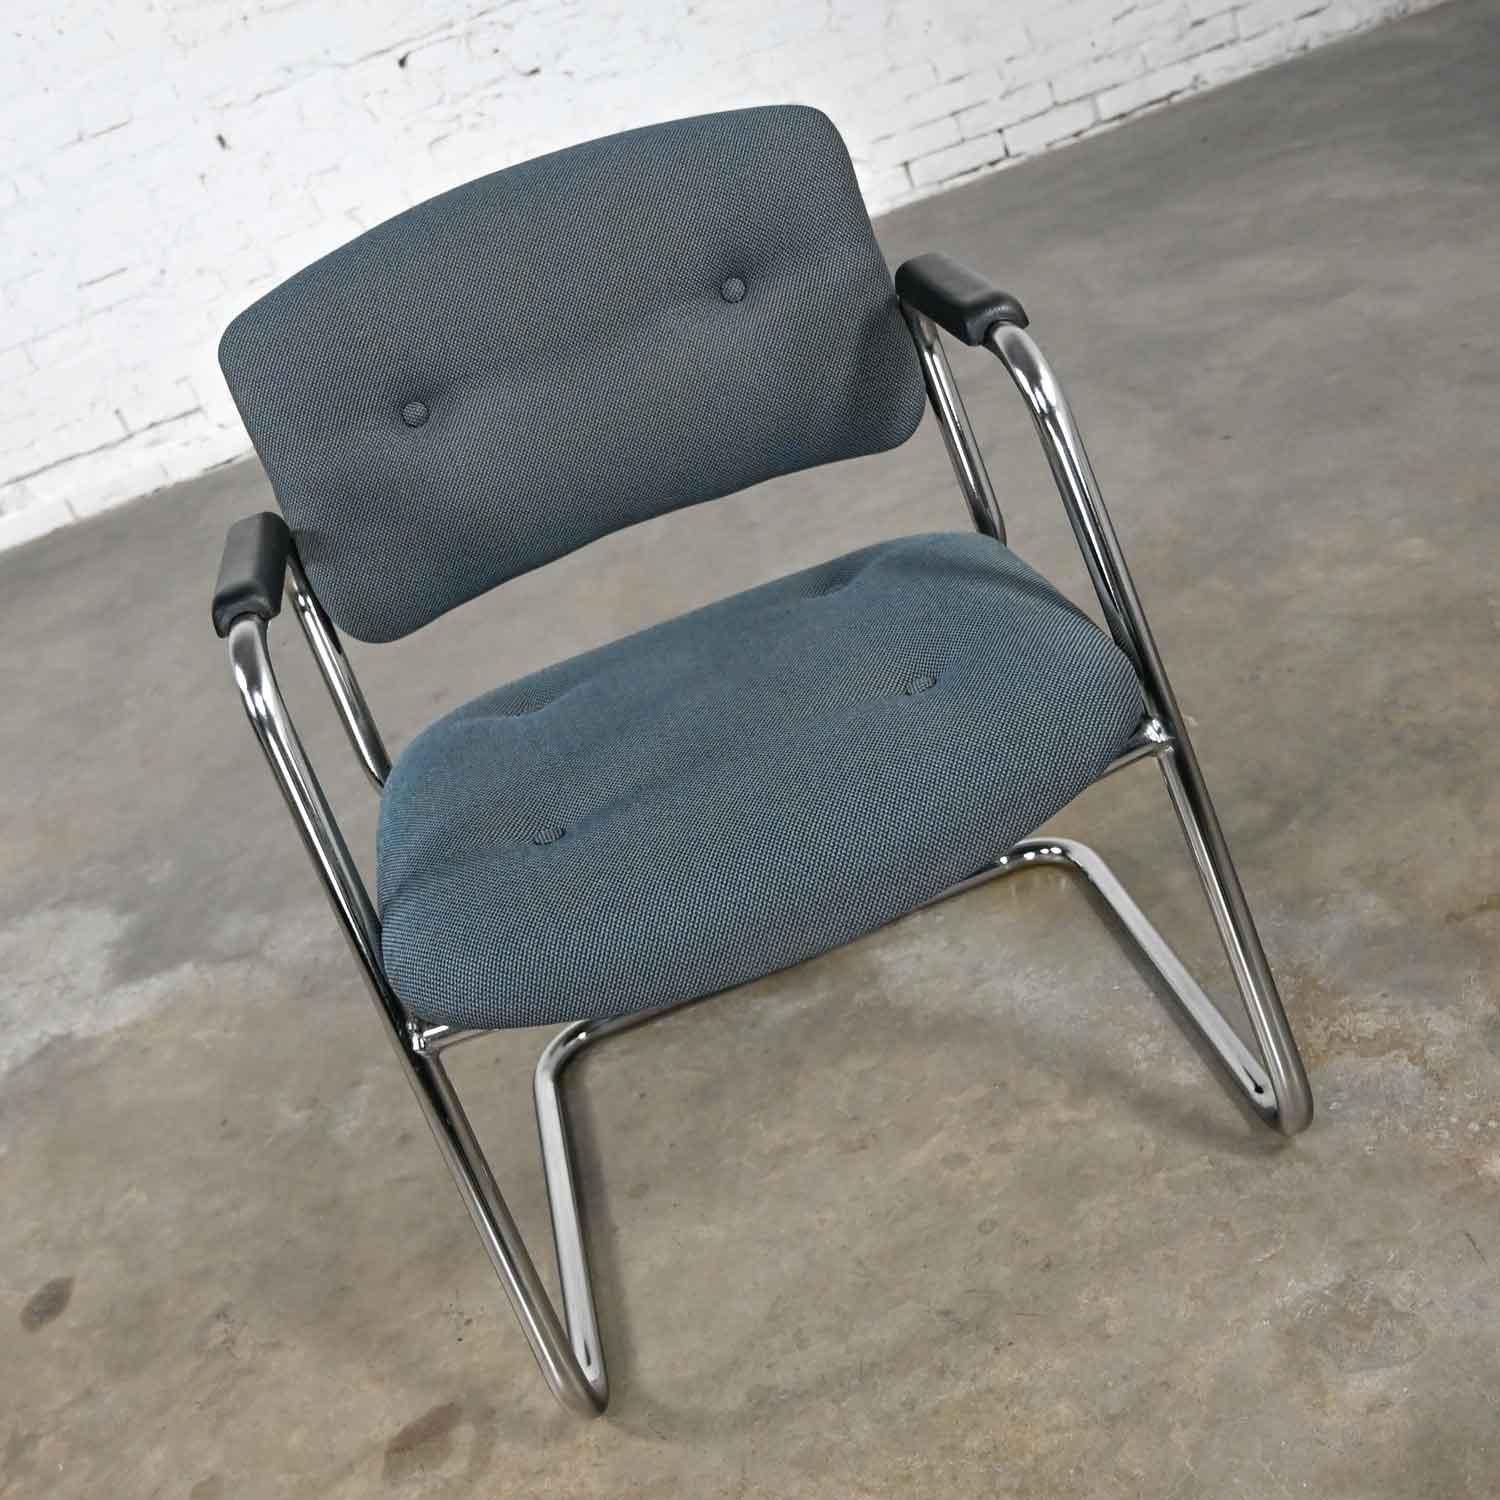 Chaises cantilever vintage gris-bleu et chrome par United Chair Company dans le style de Steelcase. Composé d'un cadre cantilever chromé, d'accoudoirs en plastique noir et de leur tissu original en tweed sarcelle et gris avec des boutons. Nous avons